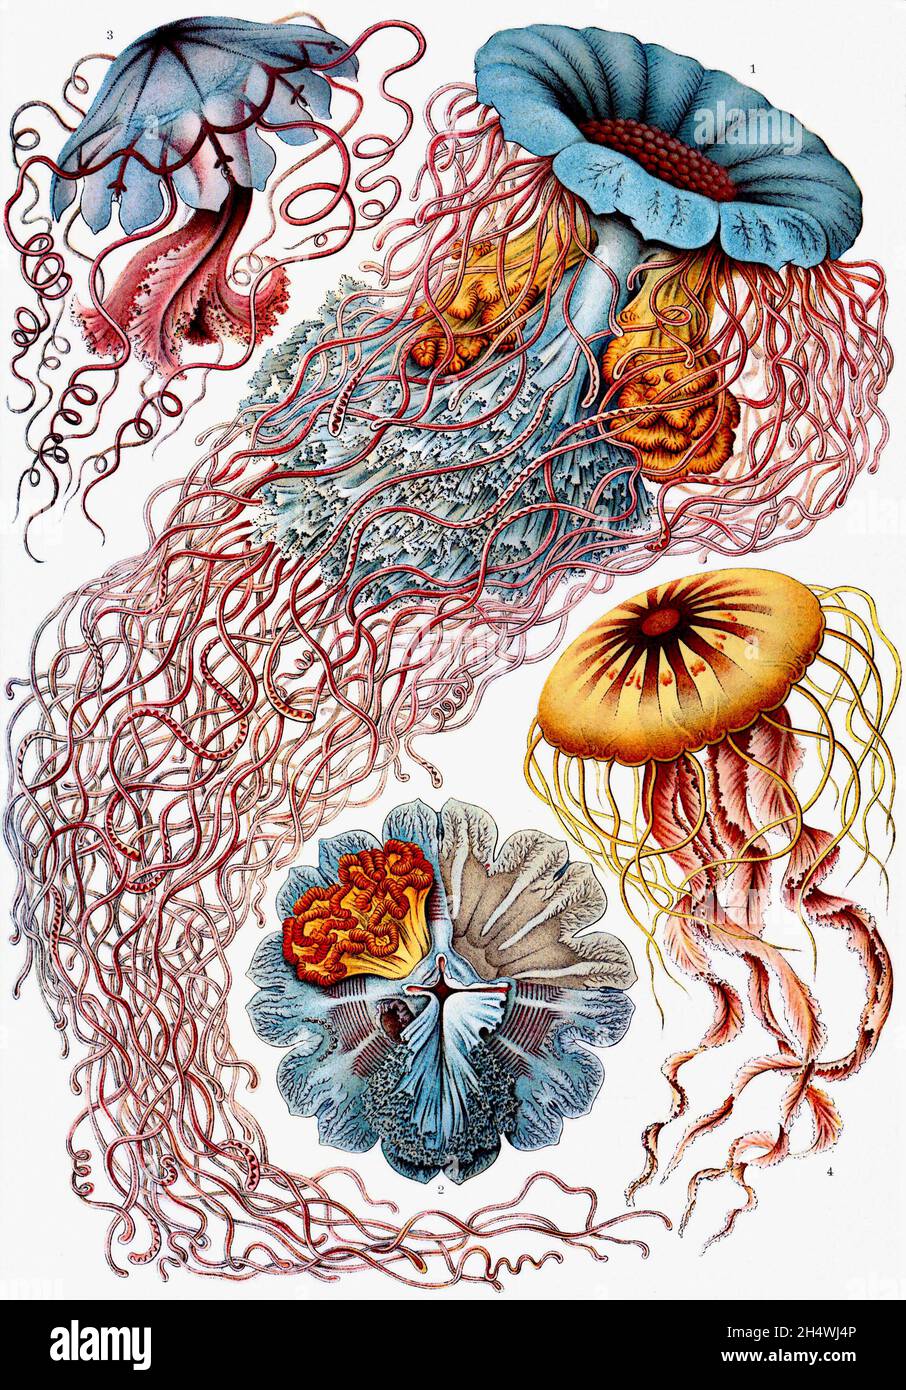 Ernst Haeckel - Discomedusae - 1904 méduses Banque D'Images